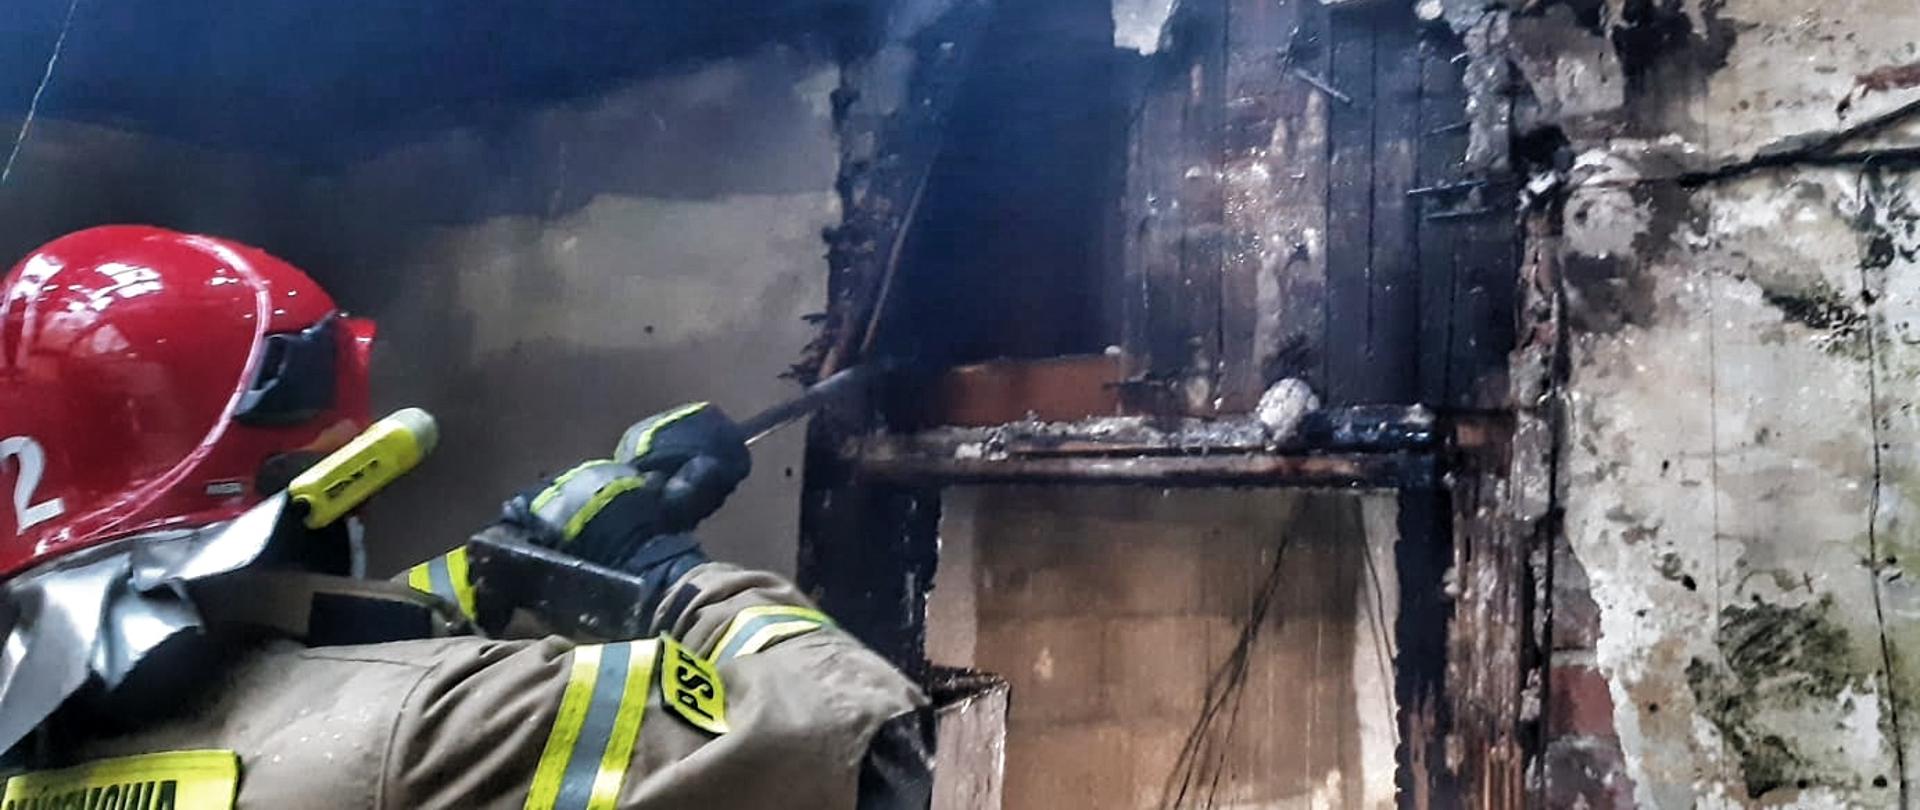 Strażak wewnątrz spalonego budynku prowadzi prace rozbiórkowe